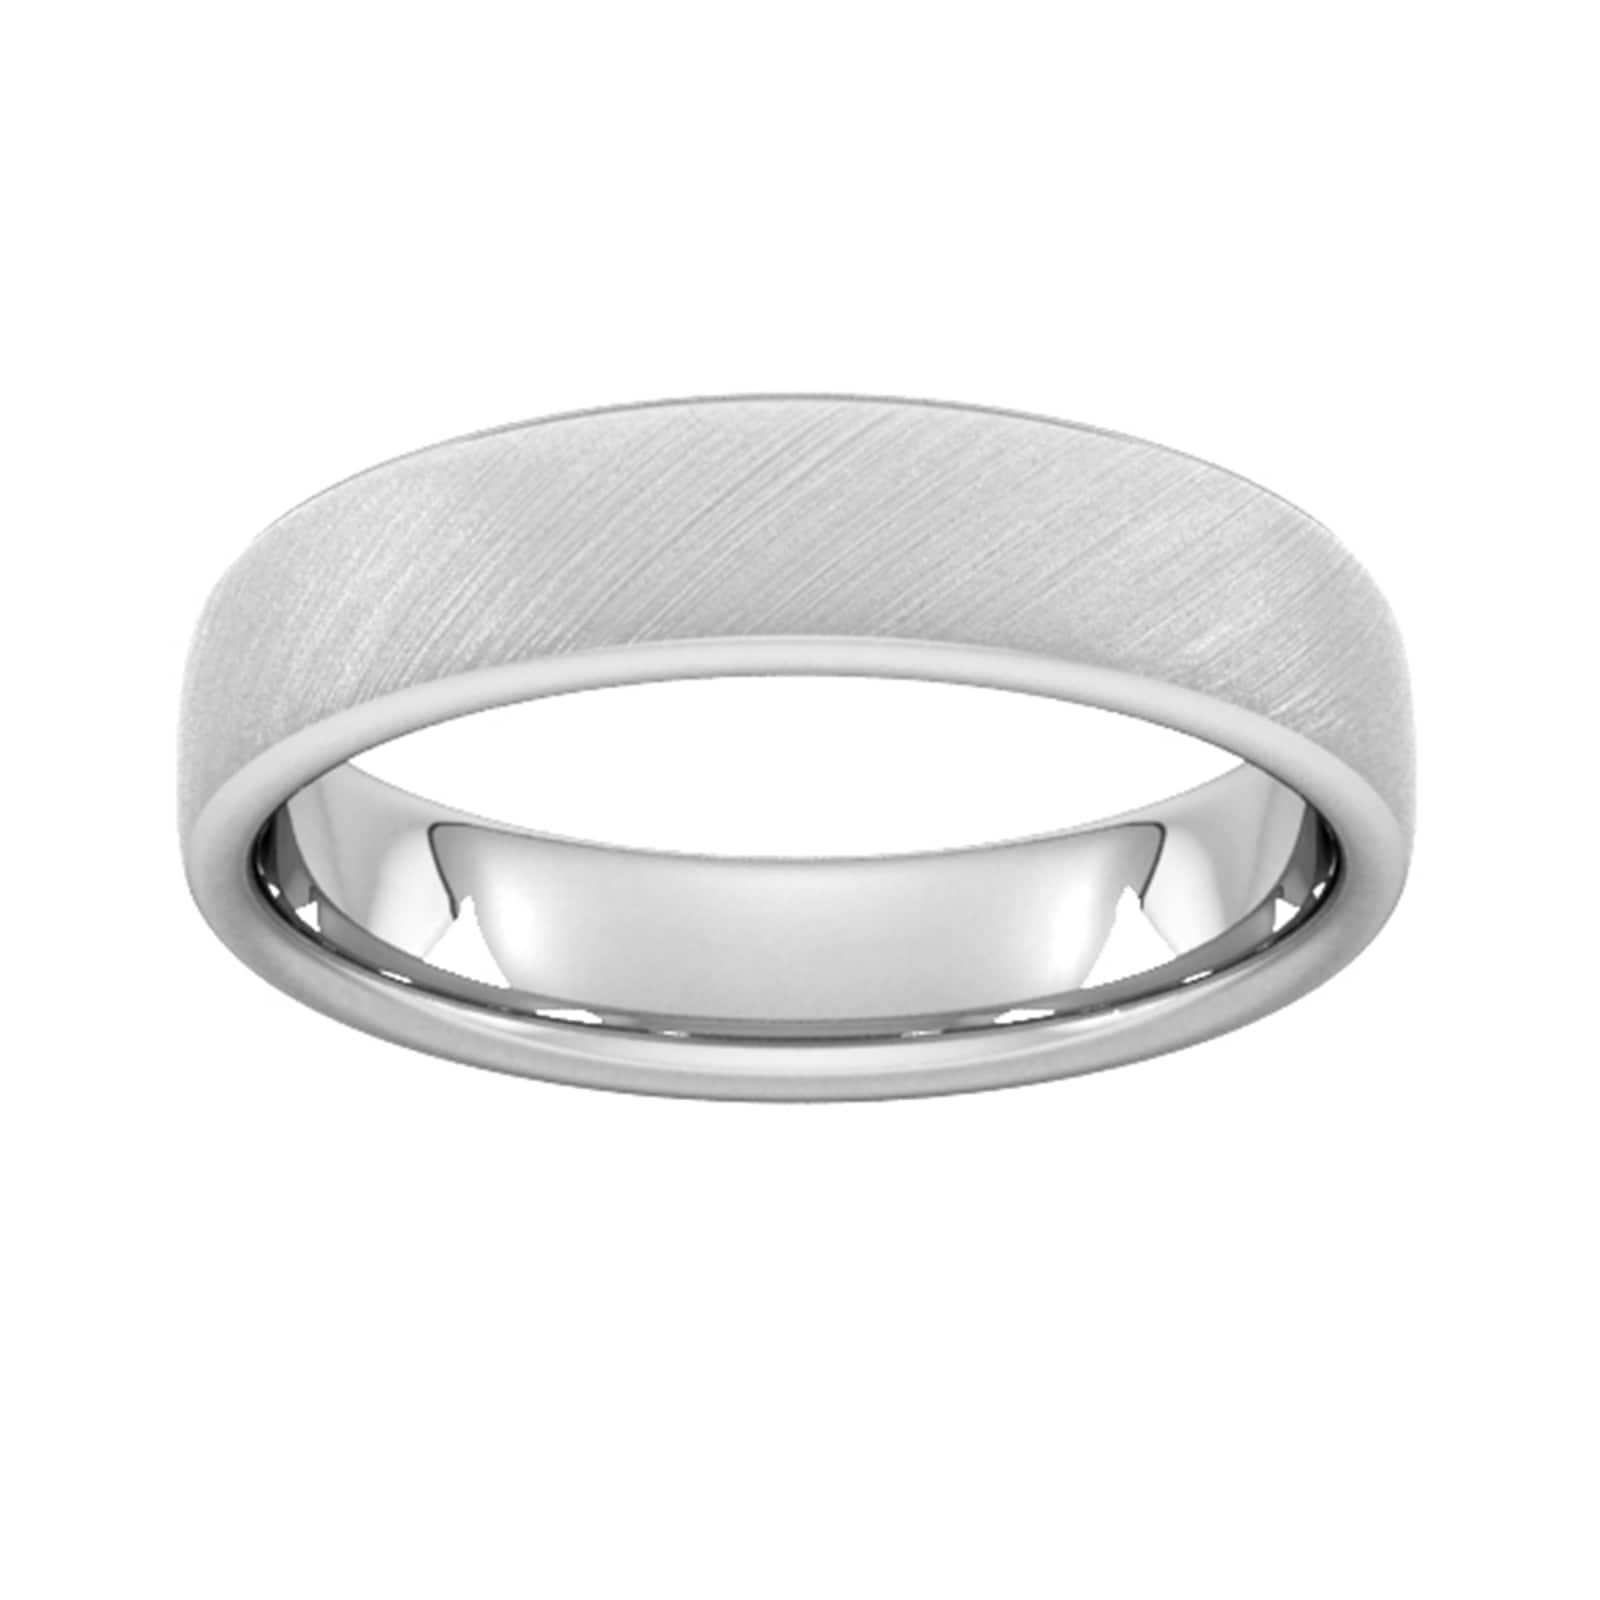 5mm Slight Court Standard Diagonal Matt Finish Wedding Ring In Platinum - Ring Size X